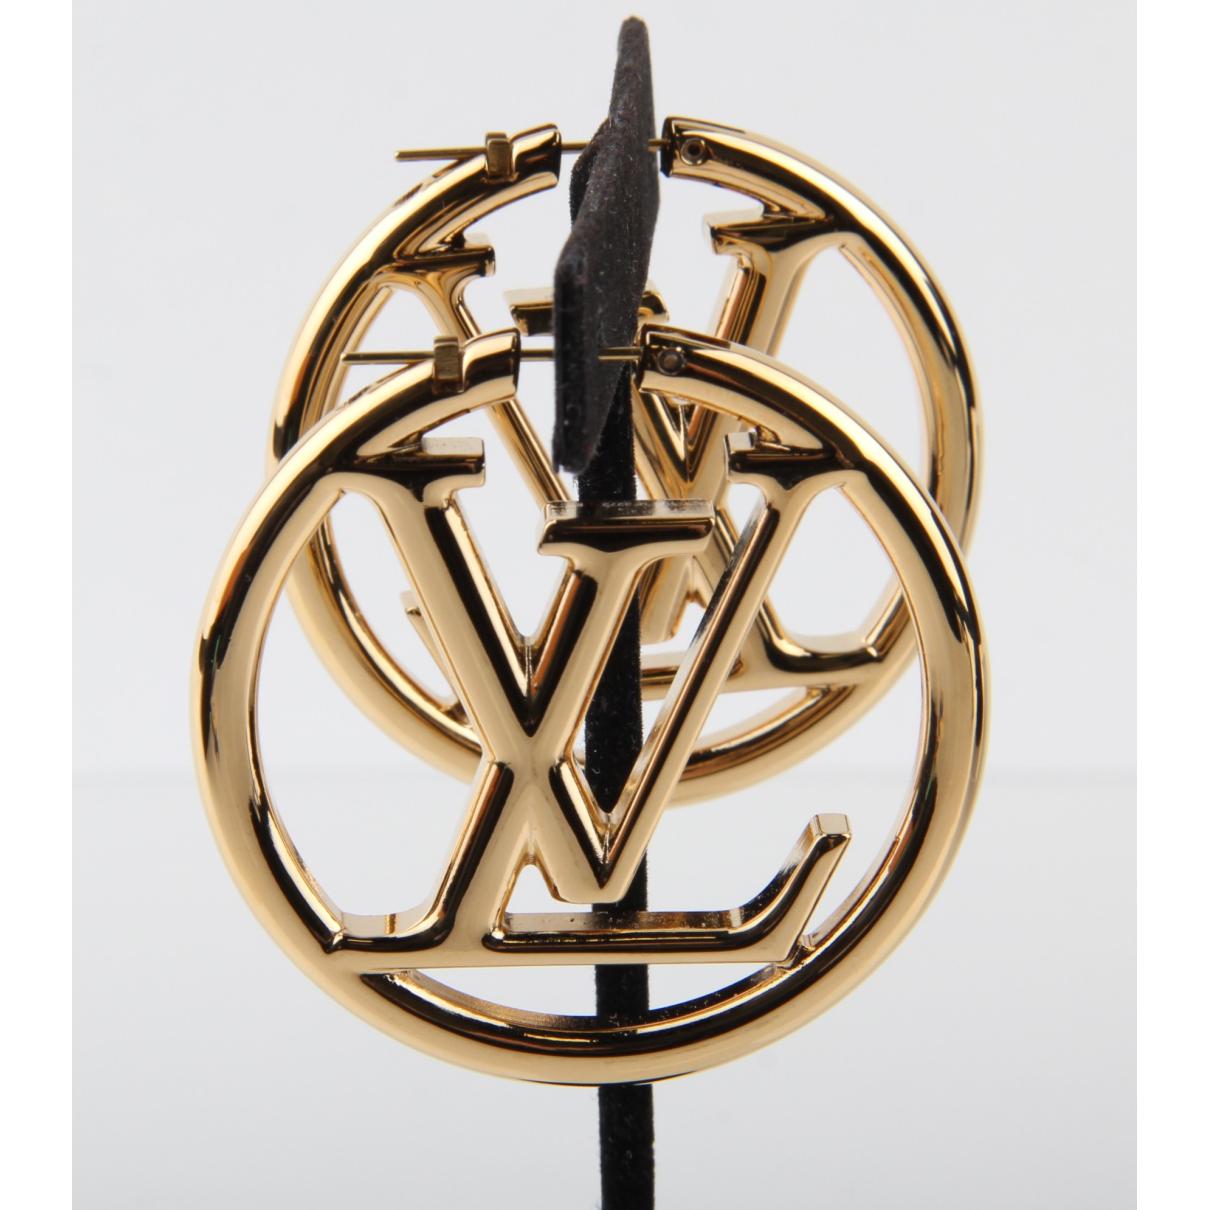 Louise earrings Louis Vuitton Gold in Metal - 31929574